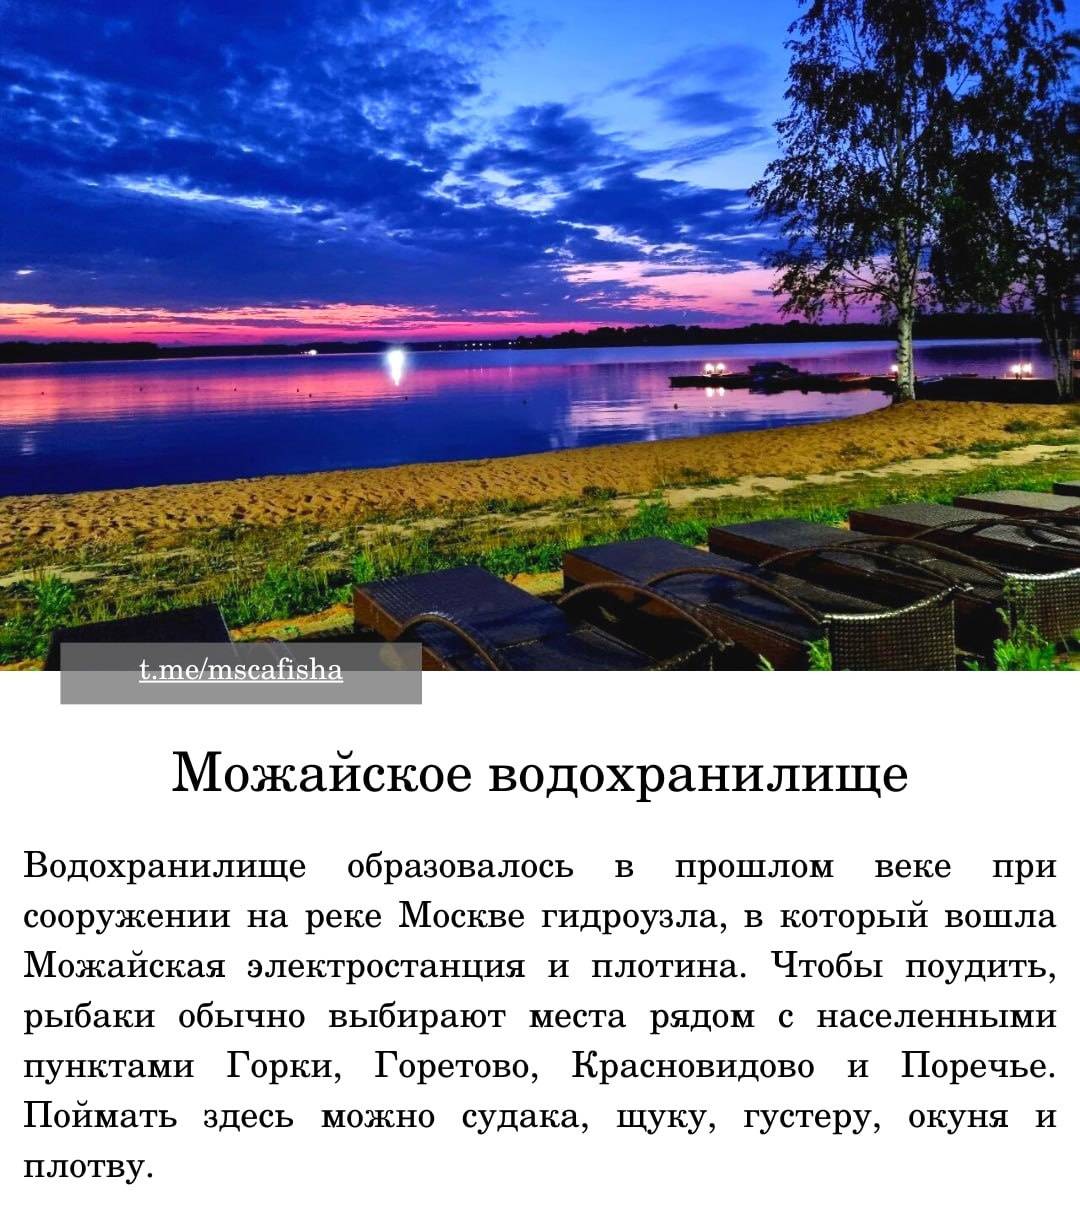 Рыбалка в татарстане - кама, отчеты 2021, в контакте